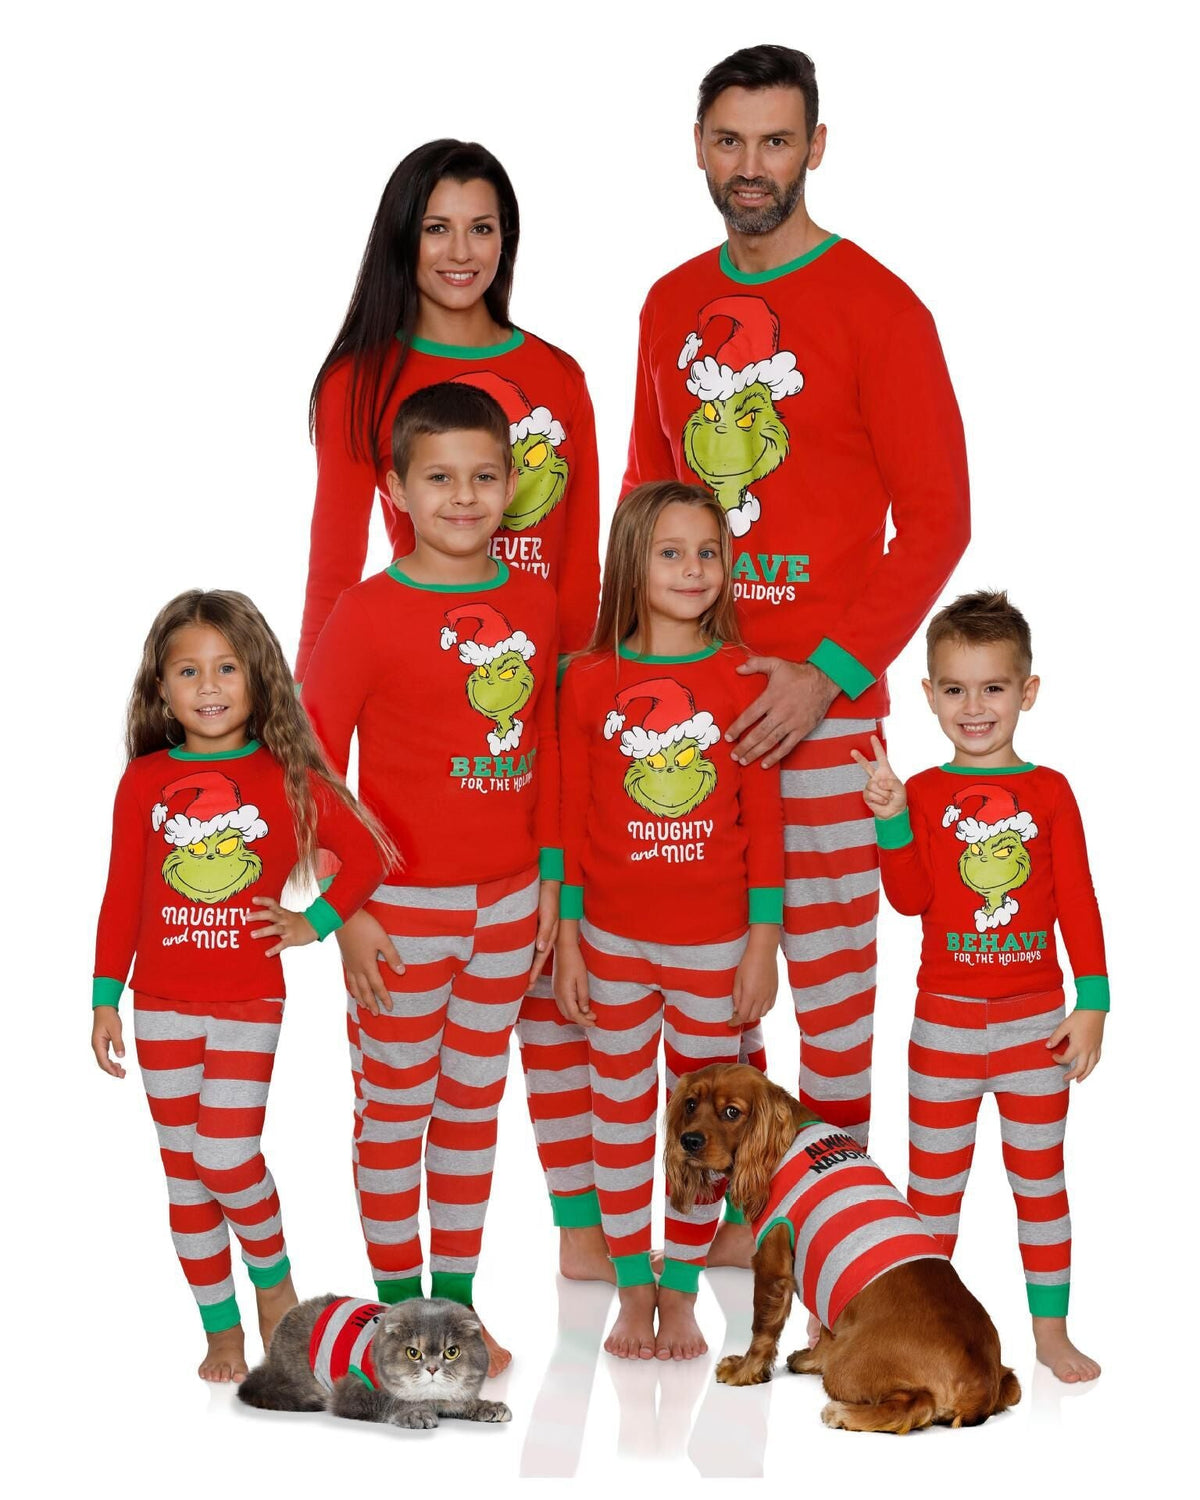 Family Christmas Pajamas Matching Pajama Sets Santa Grinch Pyjamas